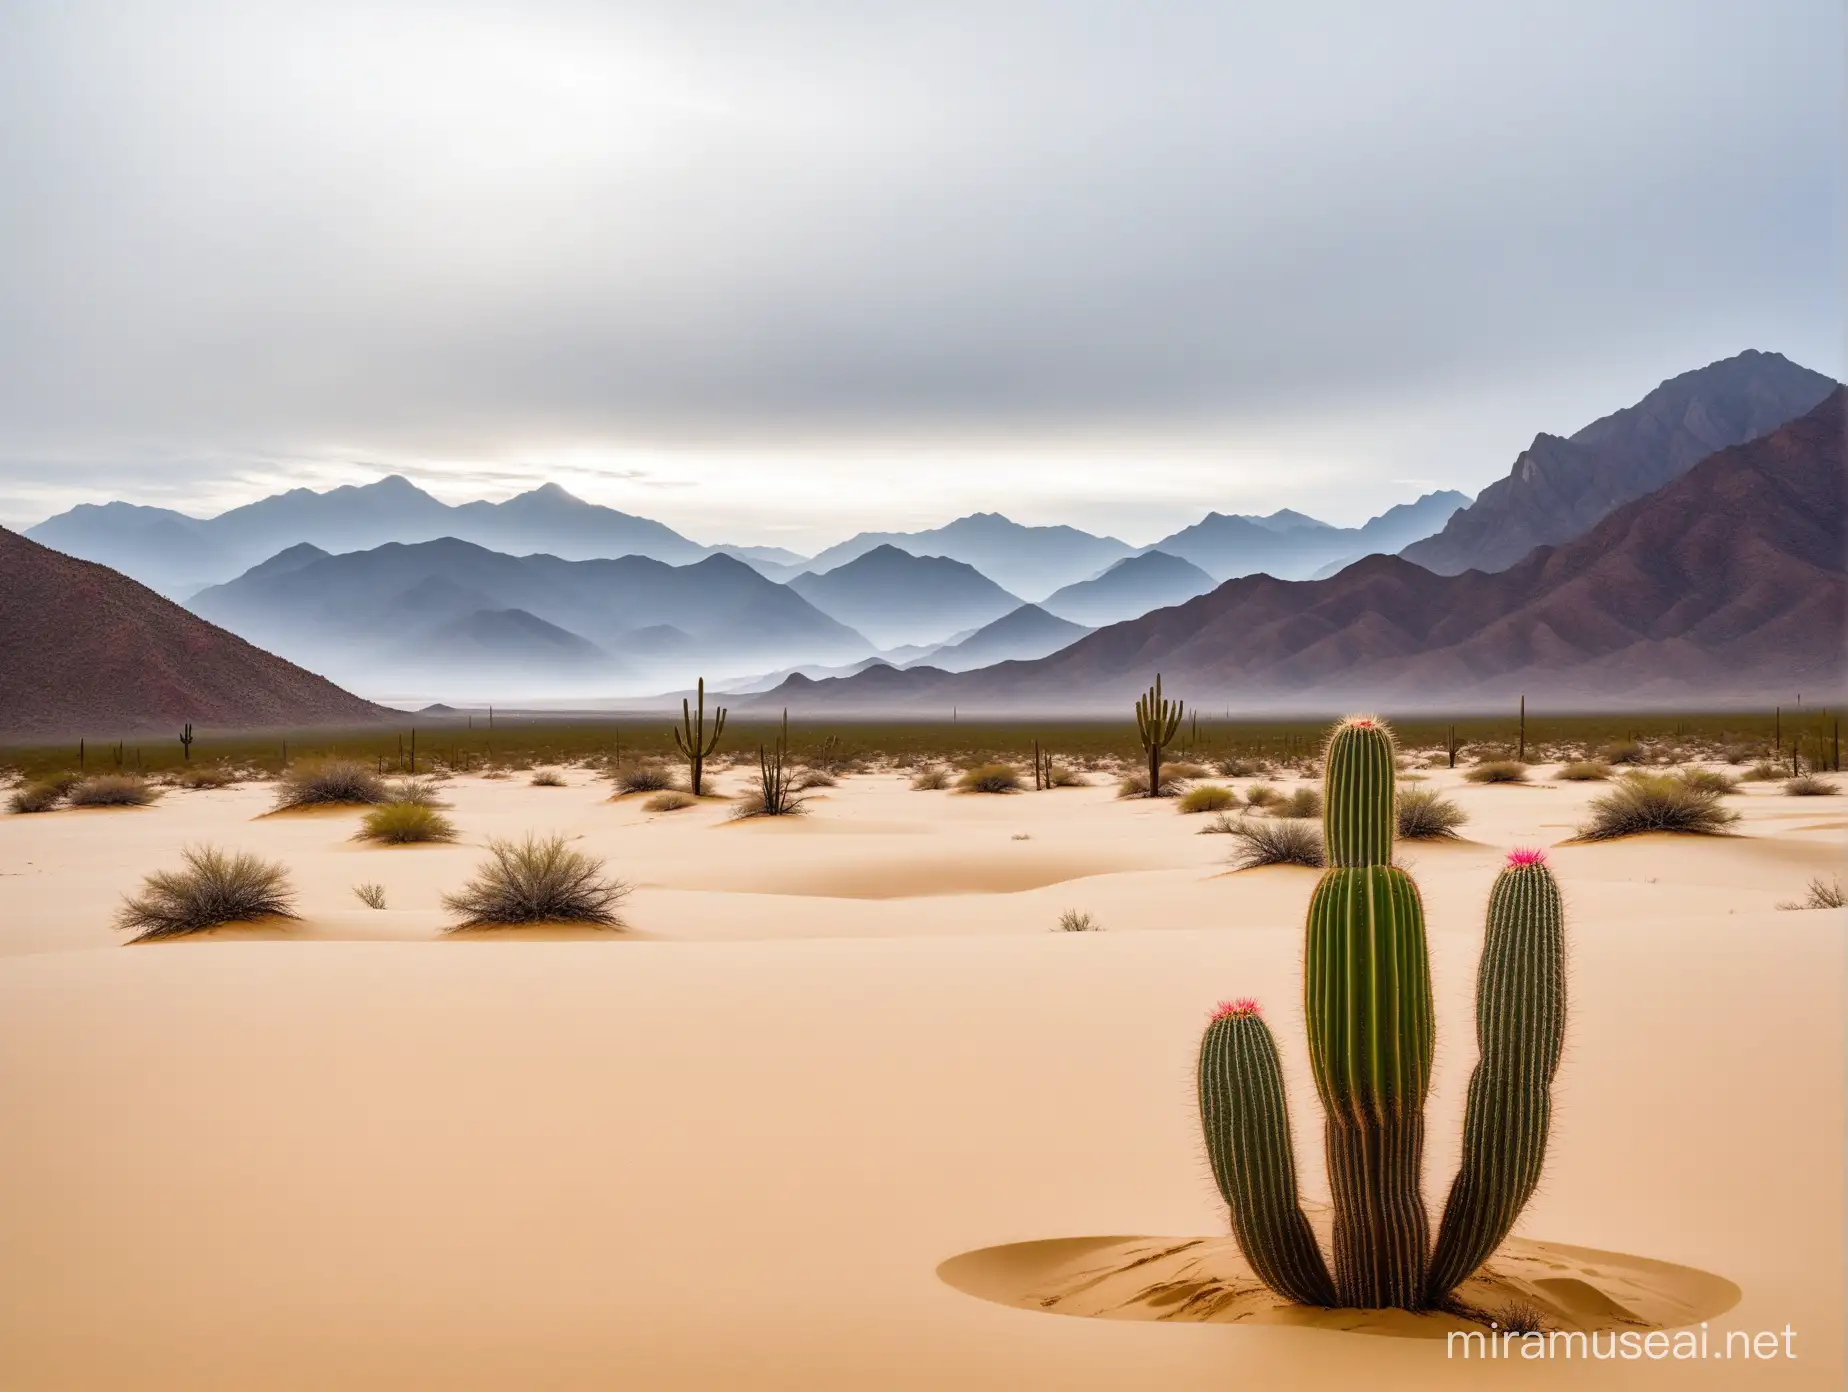 cactus en medio de llanura de arena fondo de montañas en niebla cielo nublado